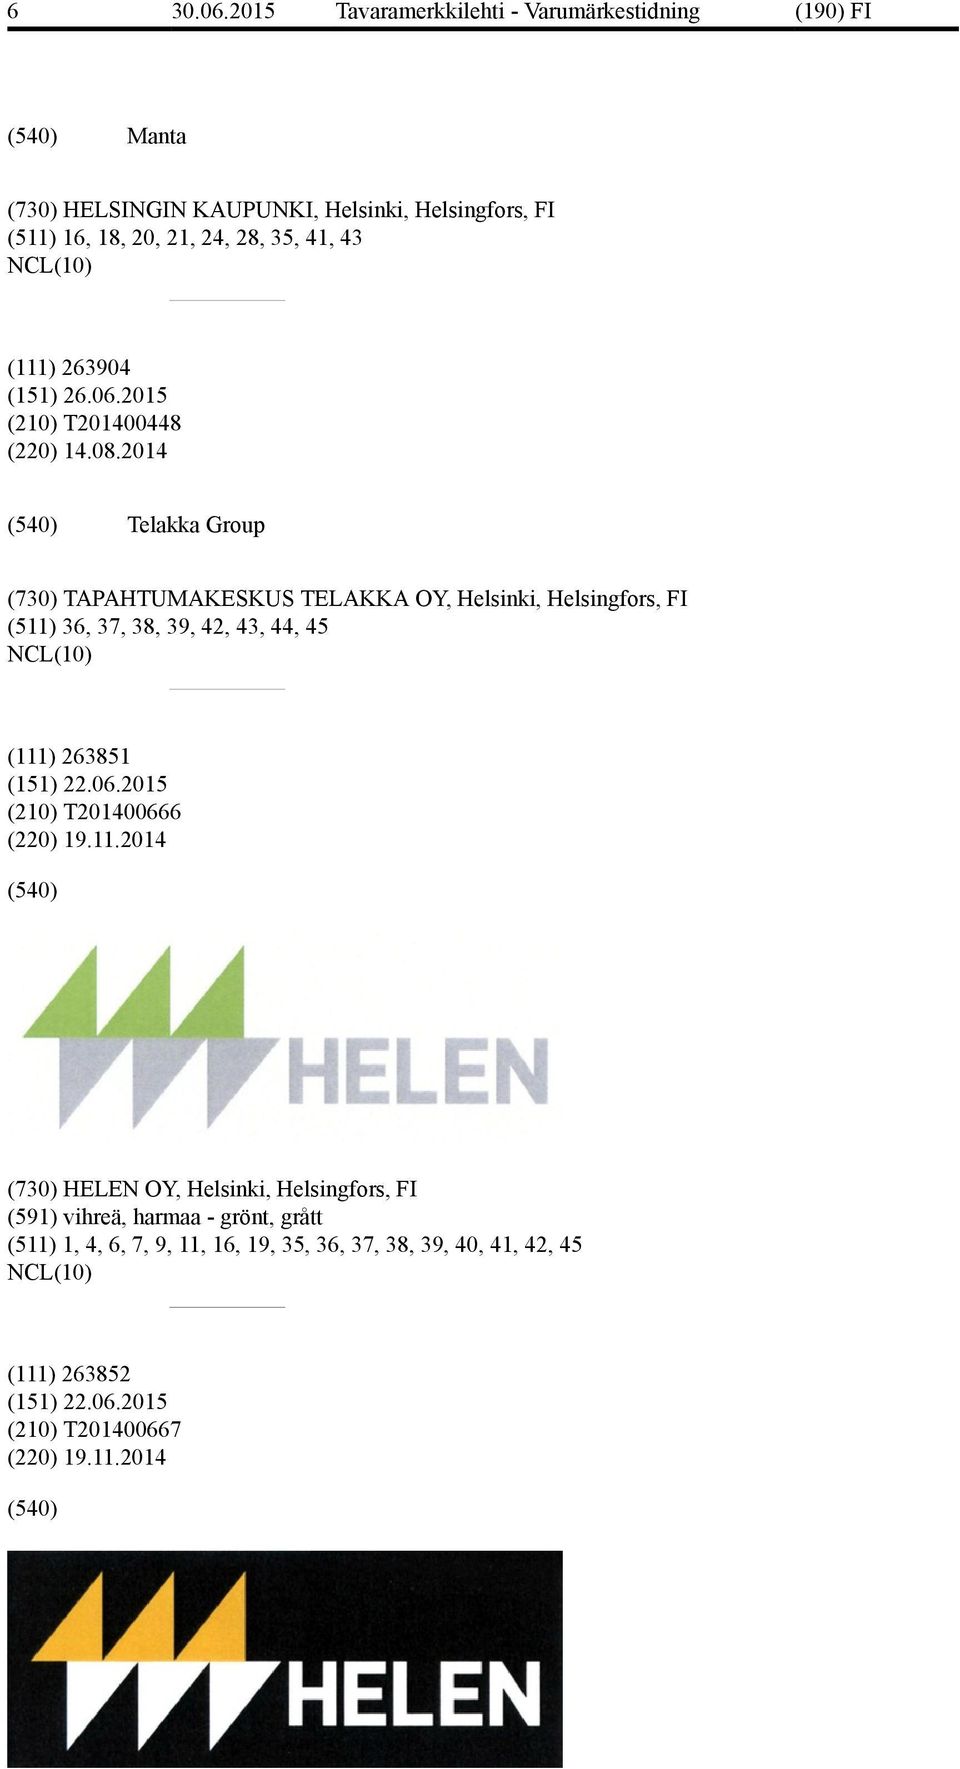 2014 Telakka Group (730) TAPAHTUMAKESKUS TELAKKA OY, Helsinki, Helsingfors, FI (511) 36, 37, 38, 39, 42, 43, 44, 45 (111) 263851 (151) 22.